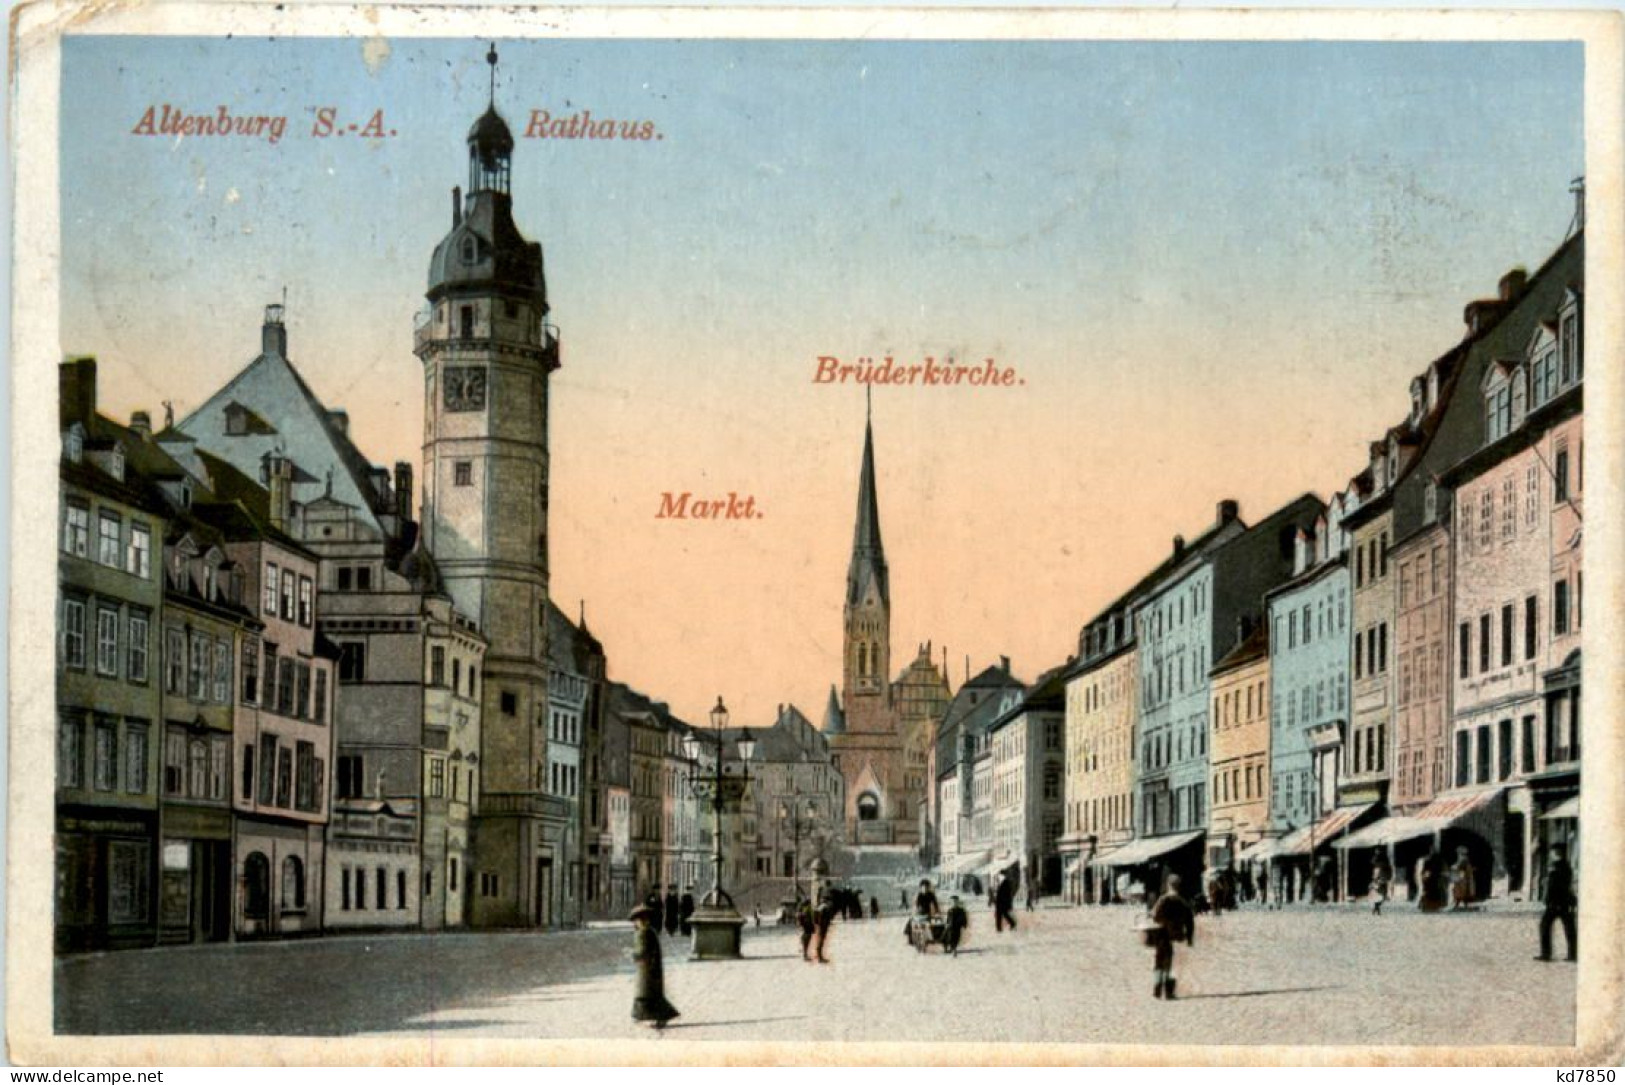 Altenburg S.A.. Rathaus, Markt, Brüderkirche - Altenburg